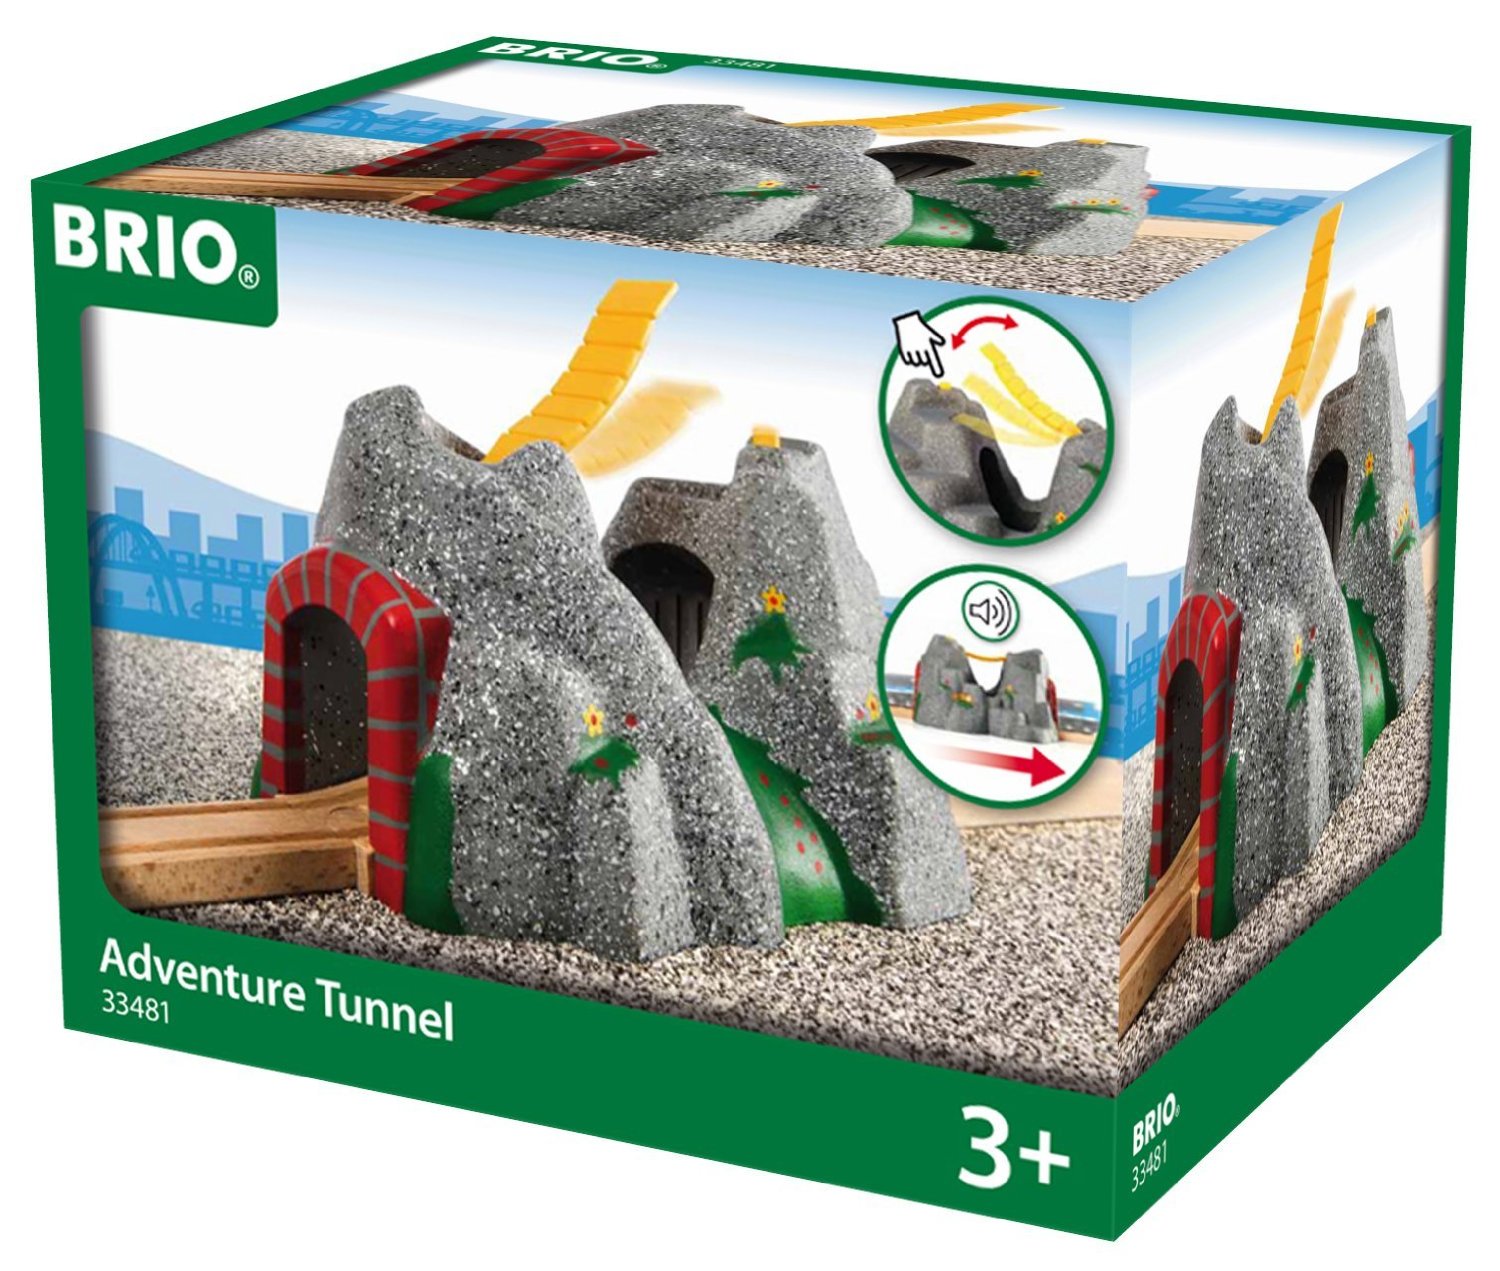 Brio Adventure Tunnel (33481)